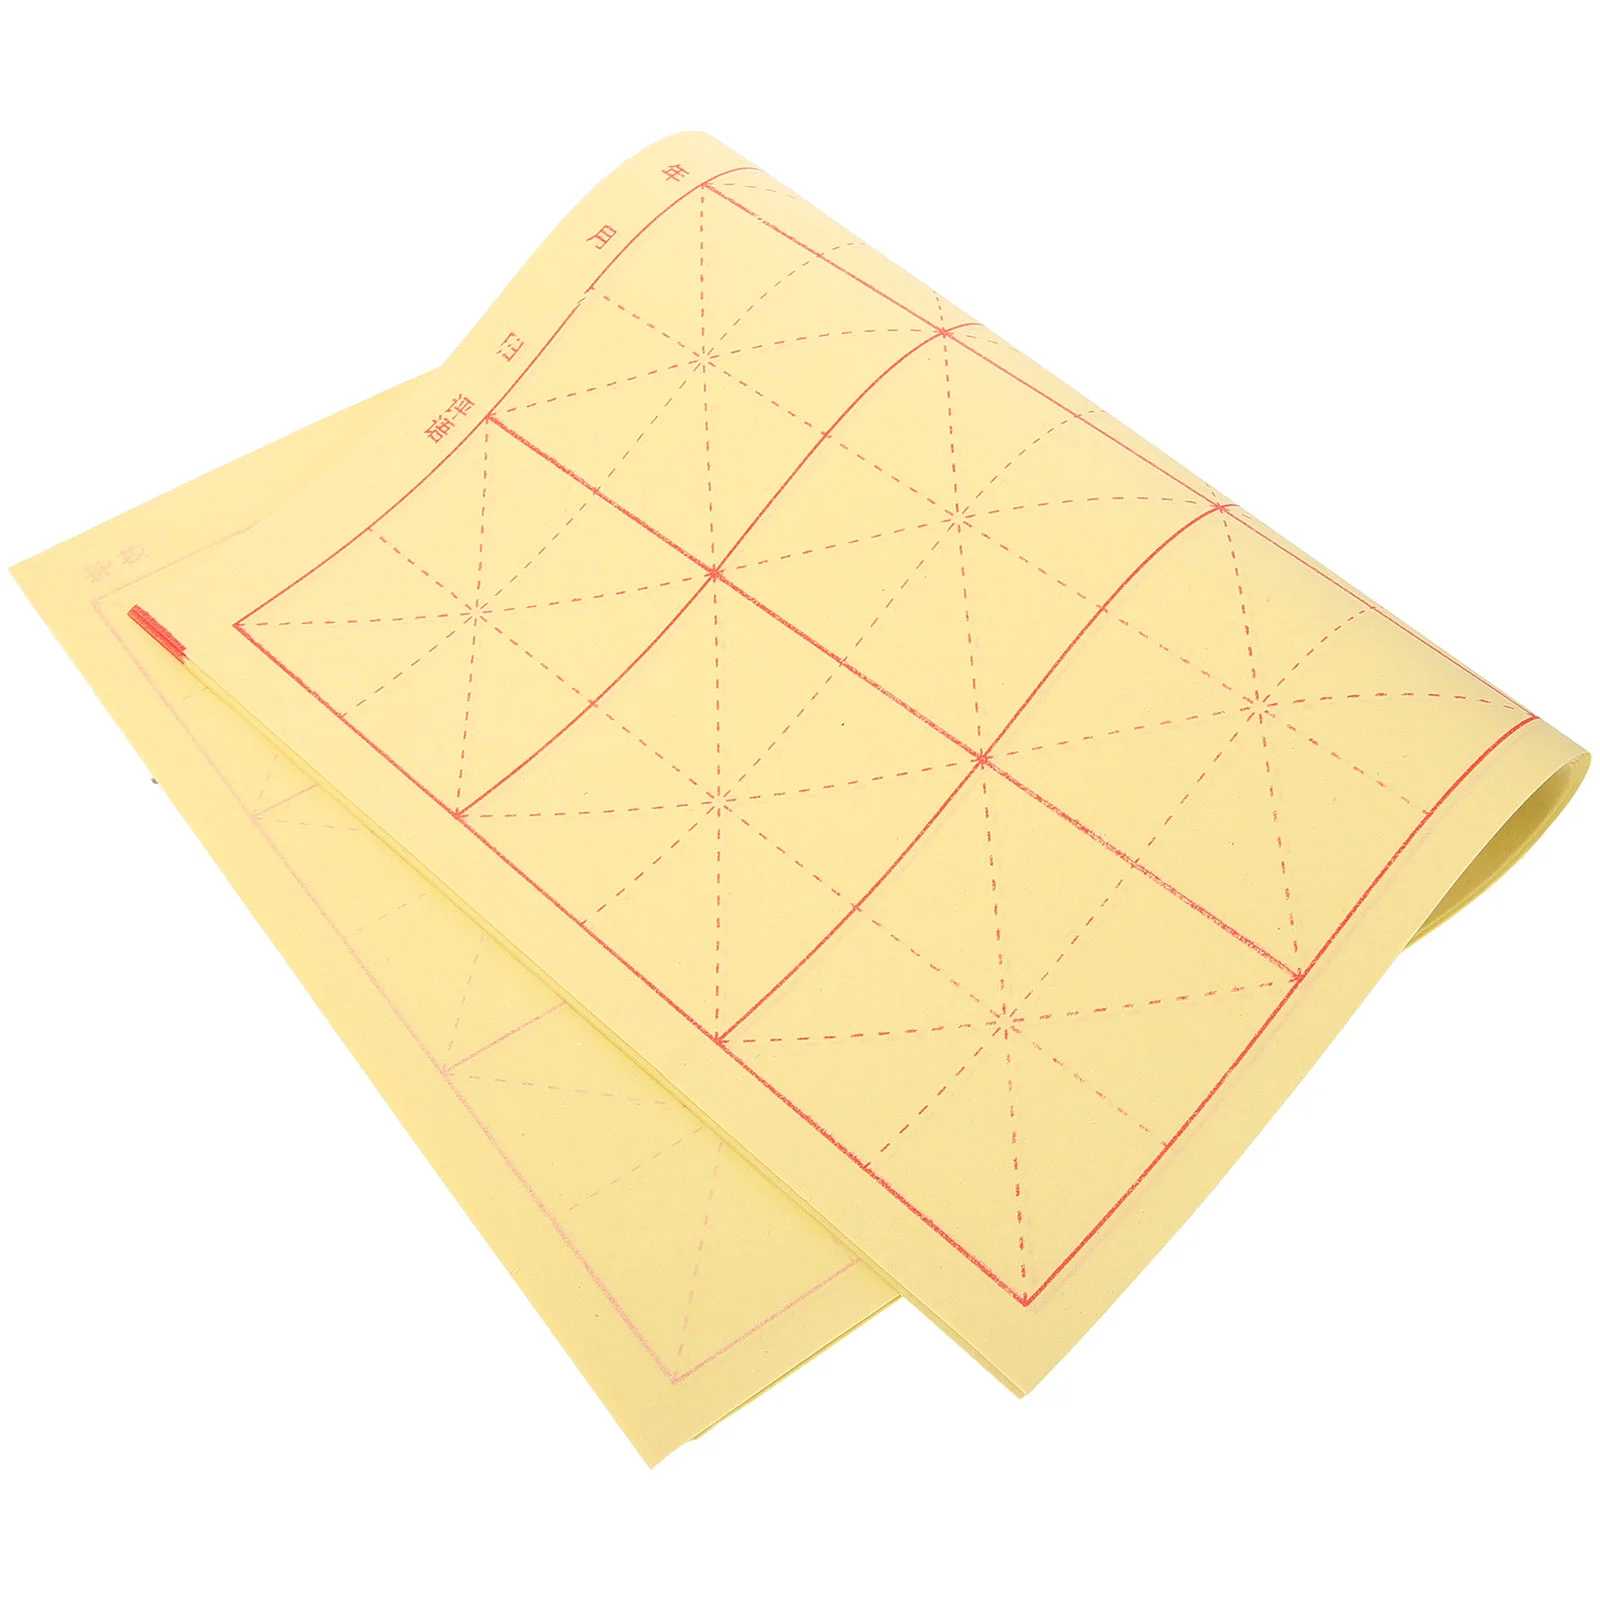 90 листов рисовой бумаги для каллиграфии, многоцелевая бумага Xuan, бумага для рукописного ввода, китайская рисовая бумага